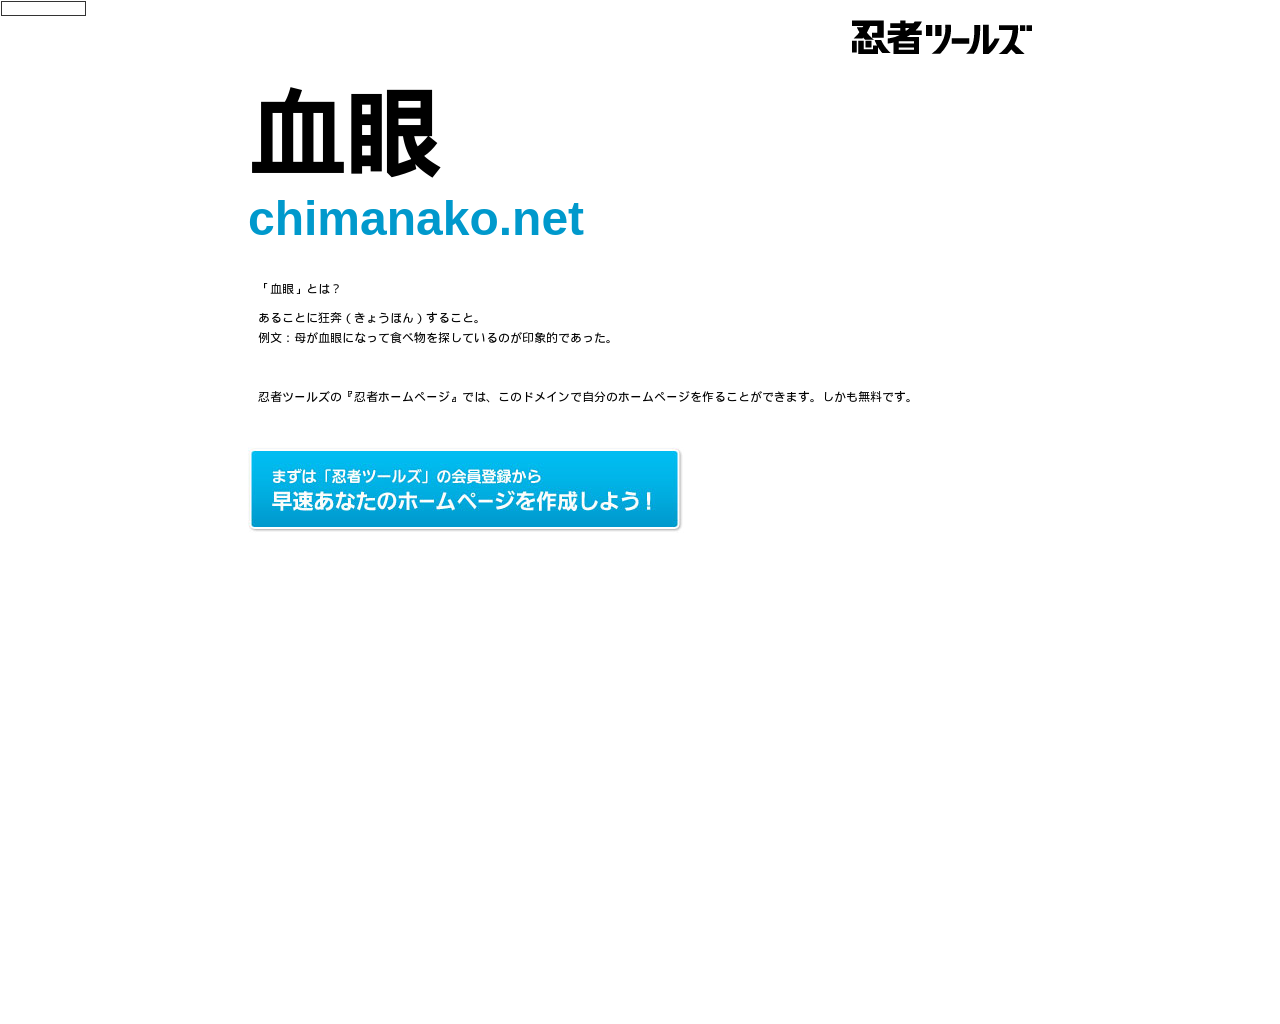 chimanako.net